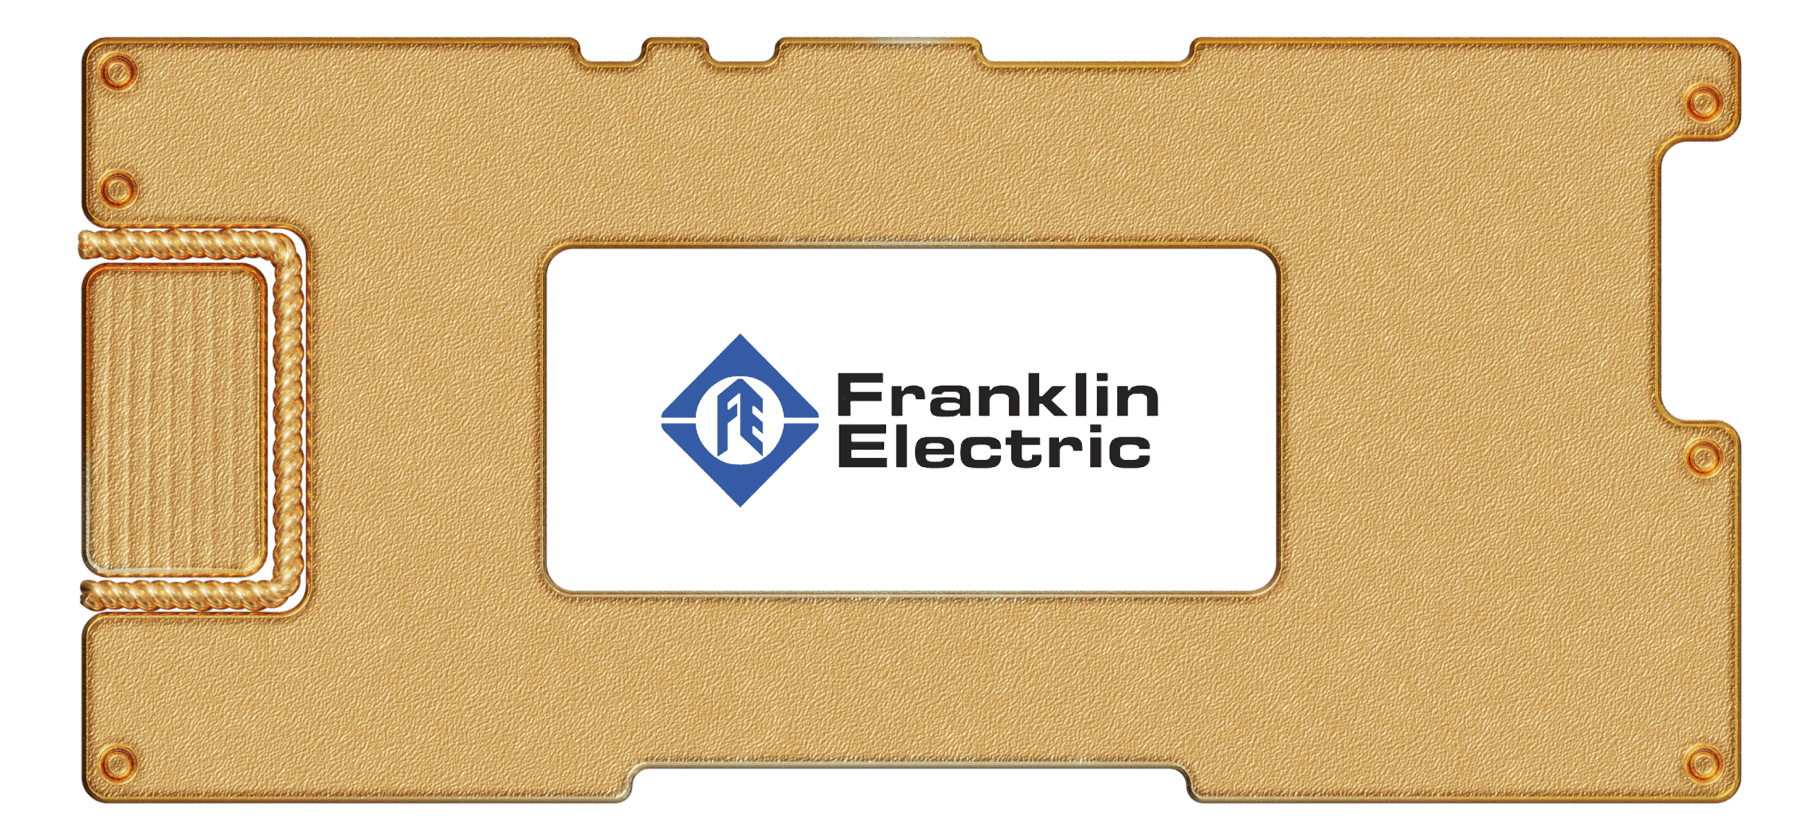 Инвестидея: Franklin Electric, потому что по этим трубам течет золото